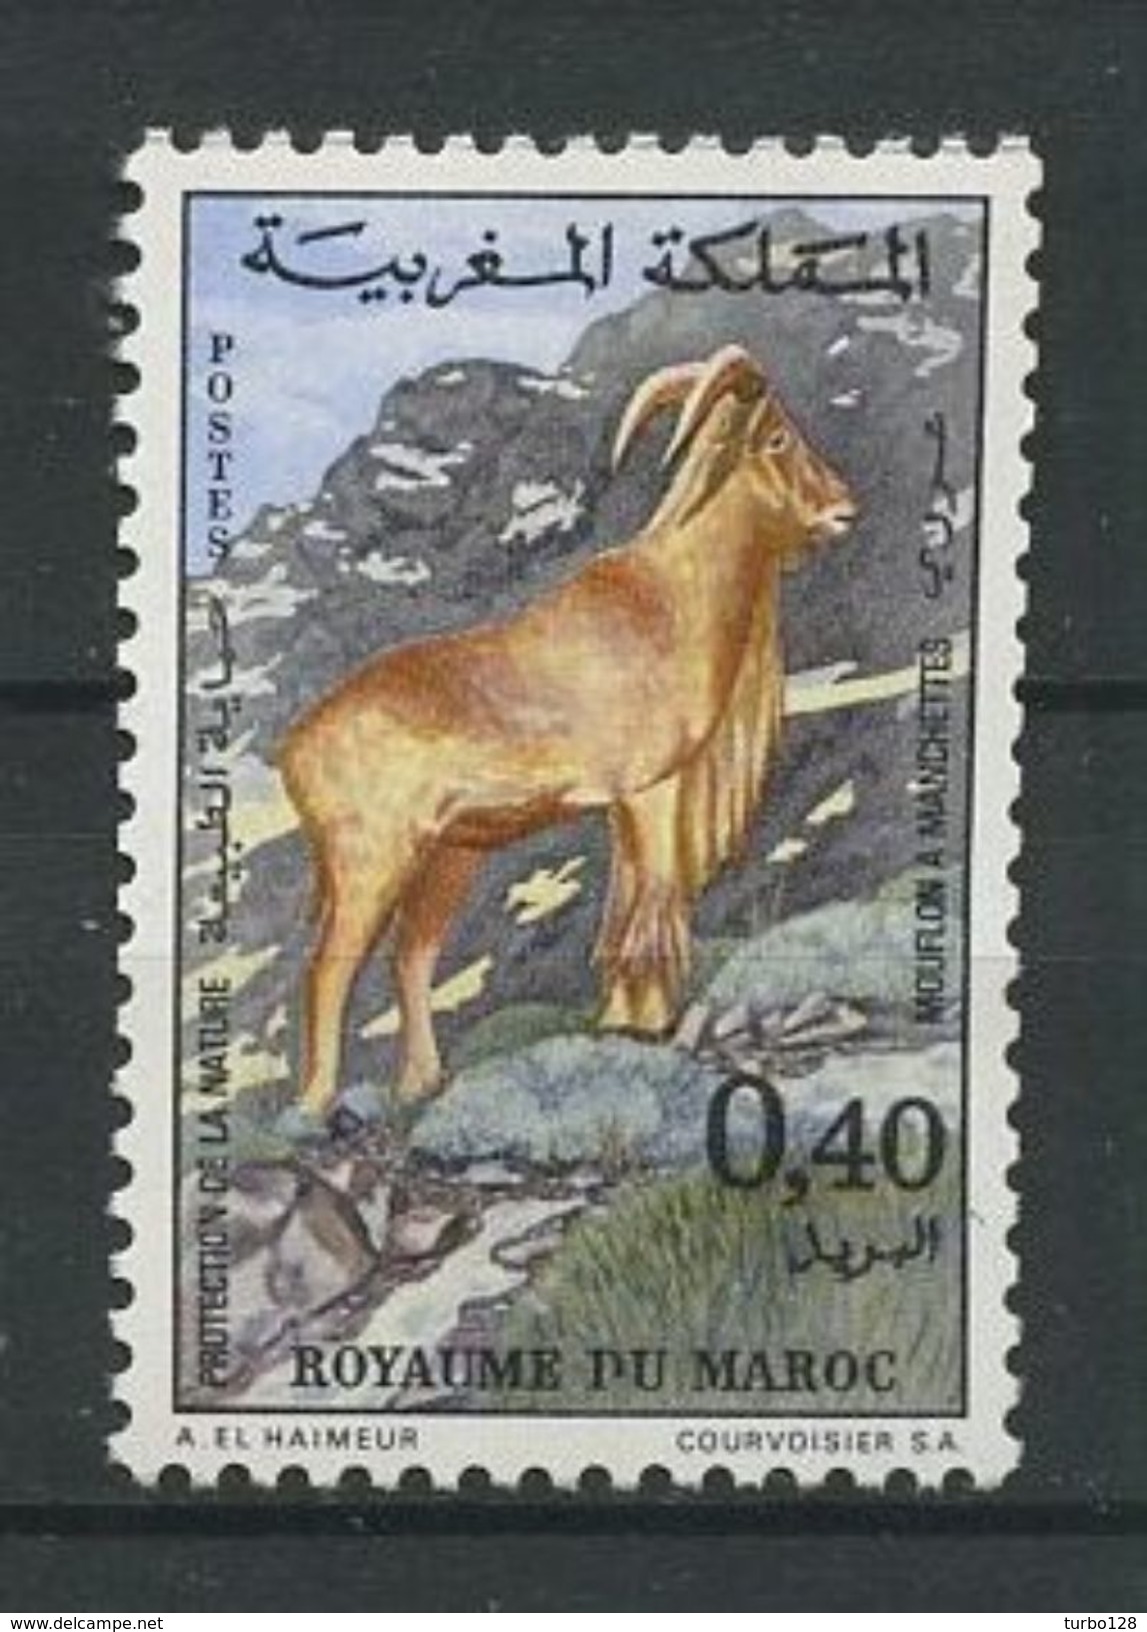 MAROC 1972 N° 647 ** Neuf MNH Superbe Cote 2,80 € Faune Animaux Mouflon à Manchettes Protection Nature - Marruecos (1956-...)